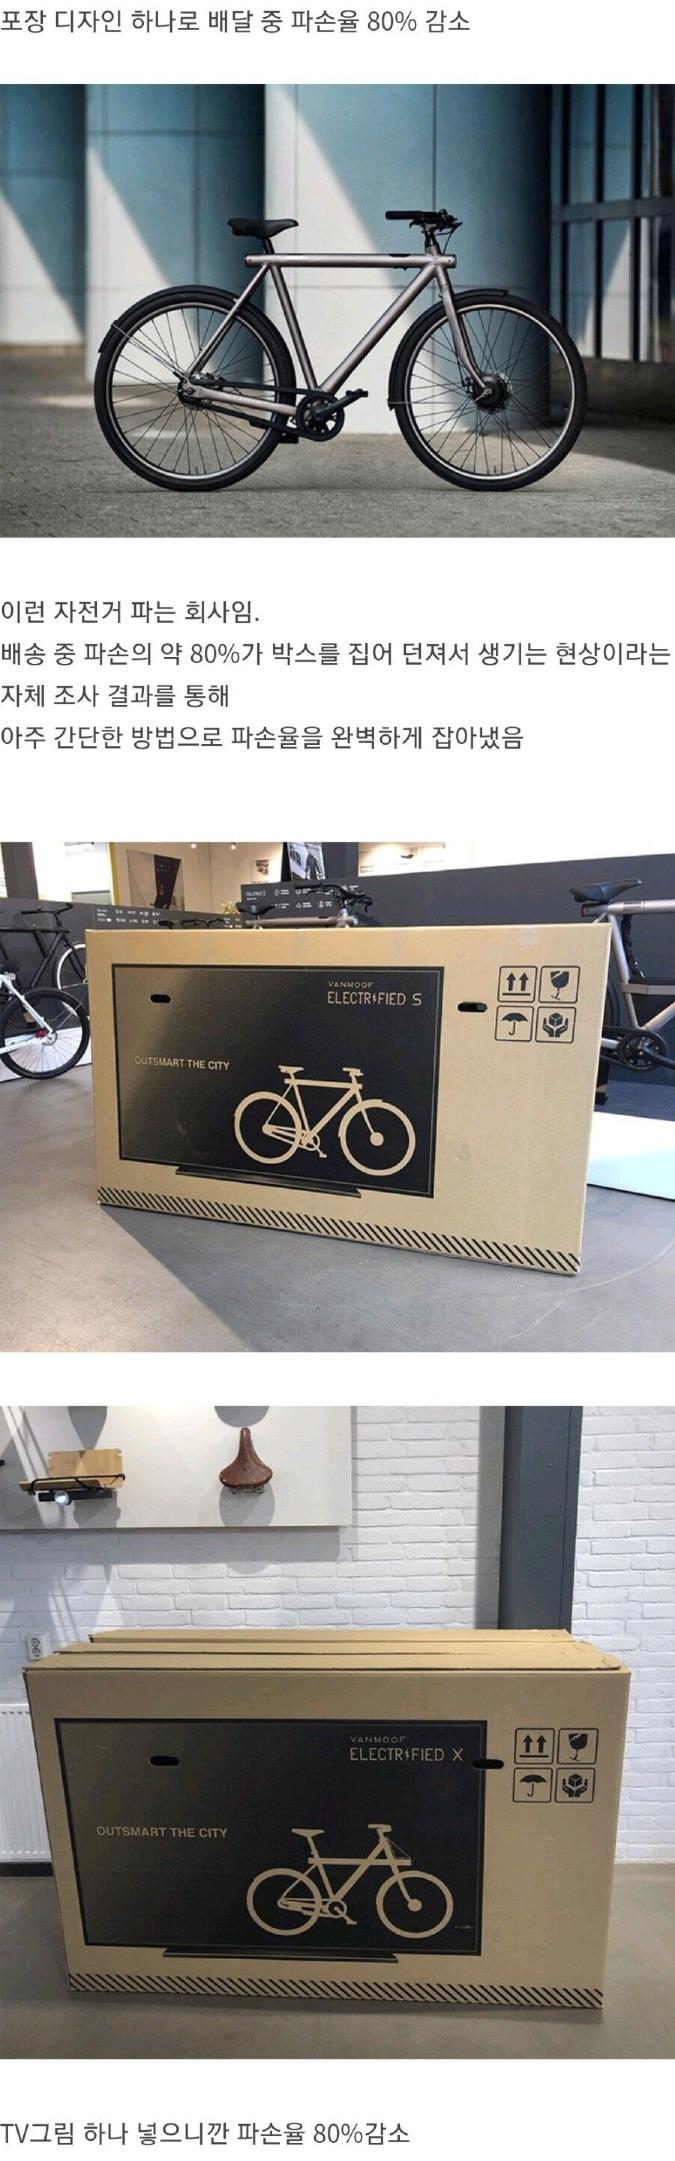 자전거 배송시 파손을 방지하는 혁신적인 포장방법.jpg